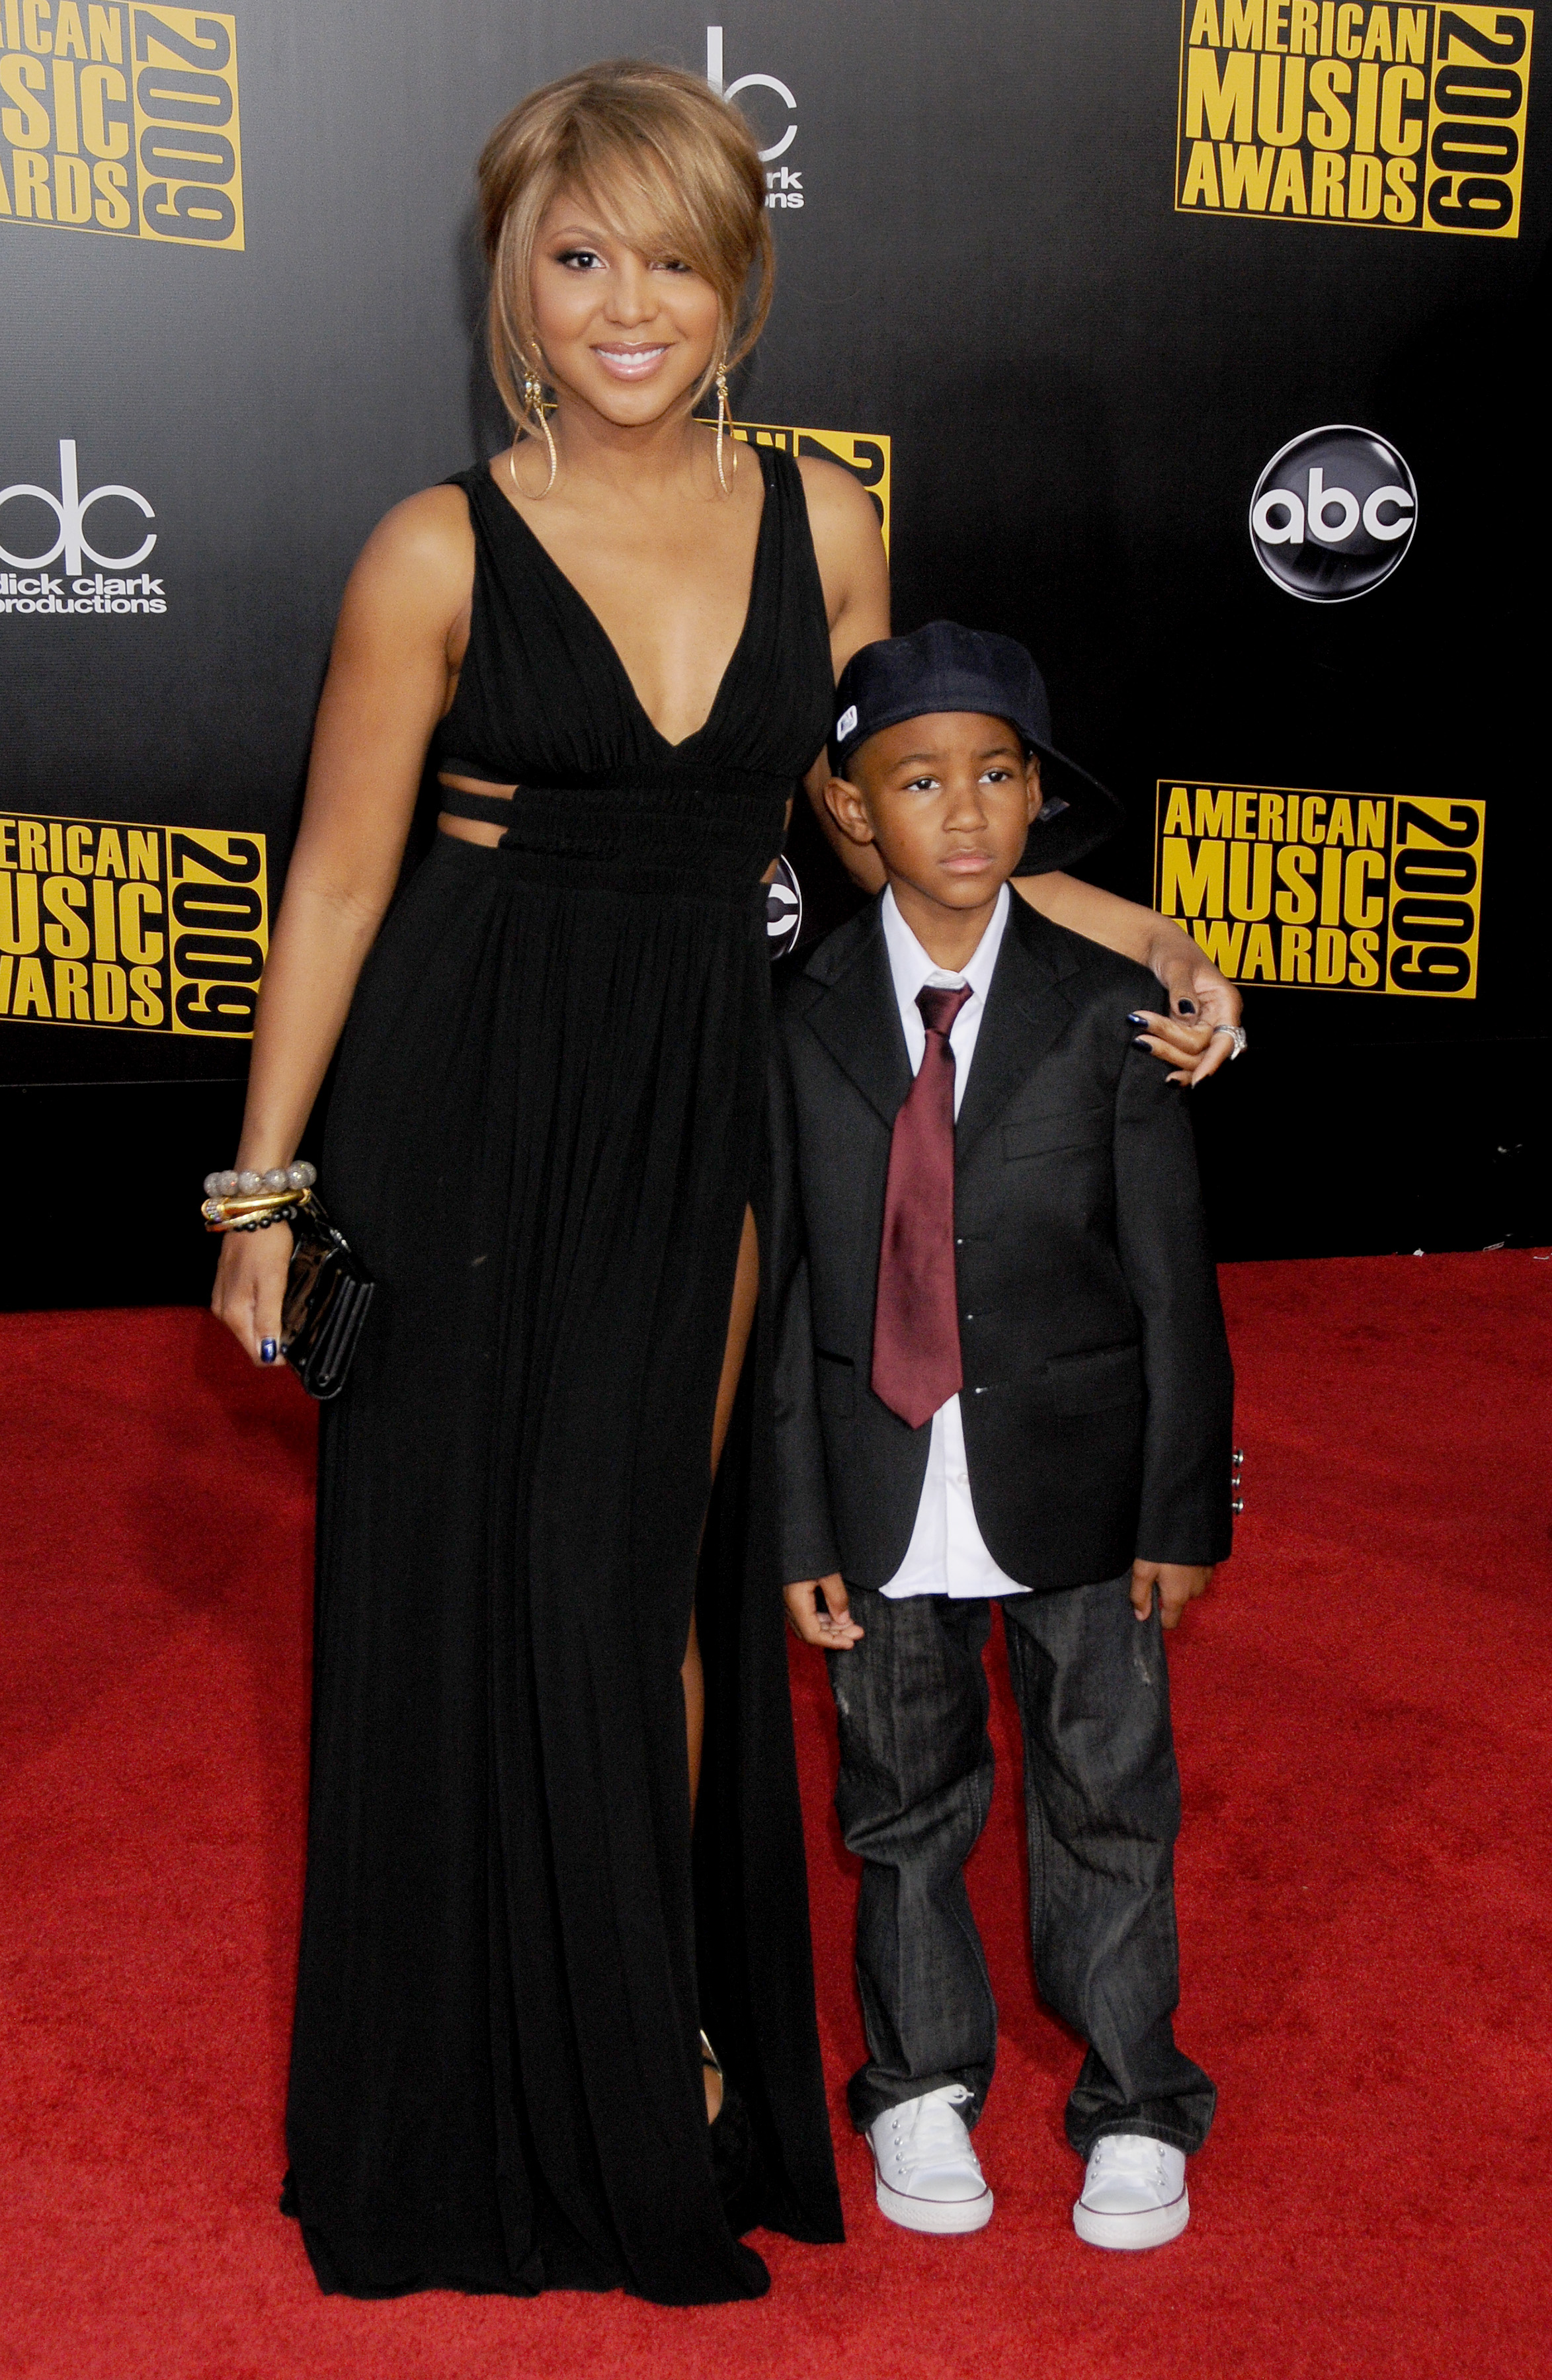 Toni Braxton et son fils Diezel arrivent aux American Music Awards le 22 novembre 2009 à Los Angeles, Californie | Source : Getty Images